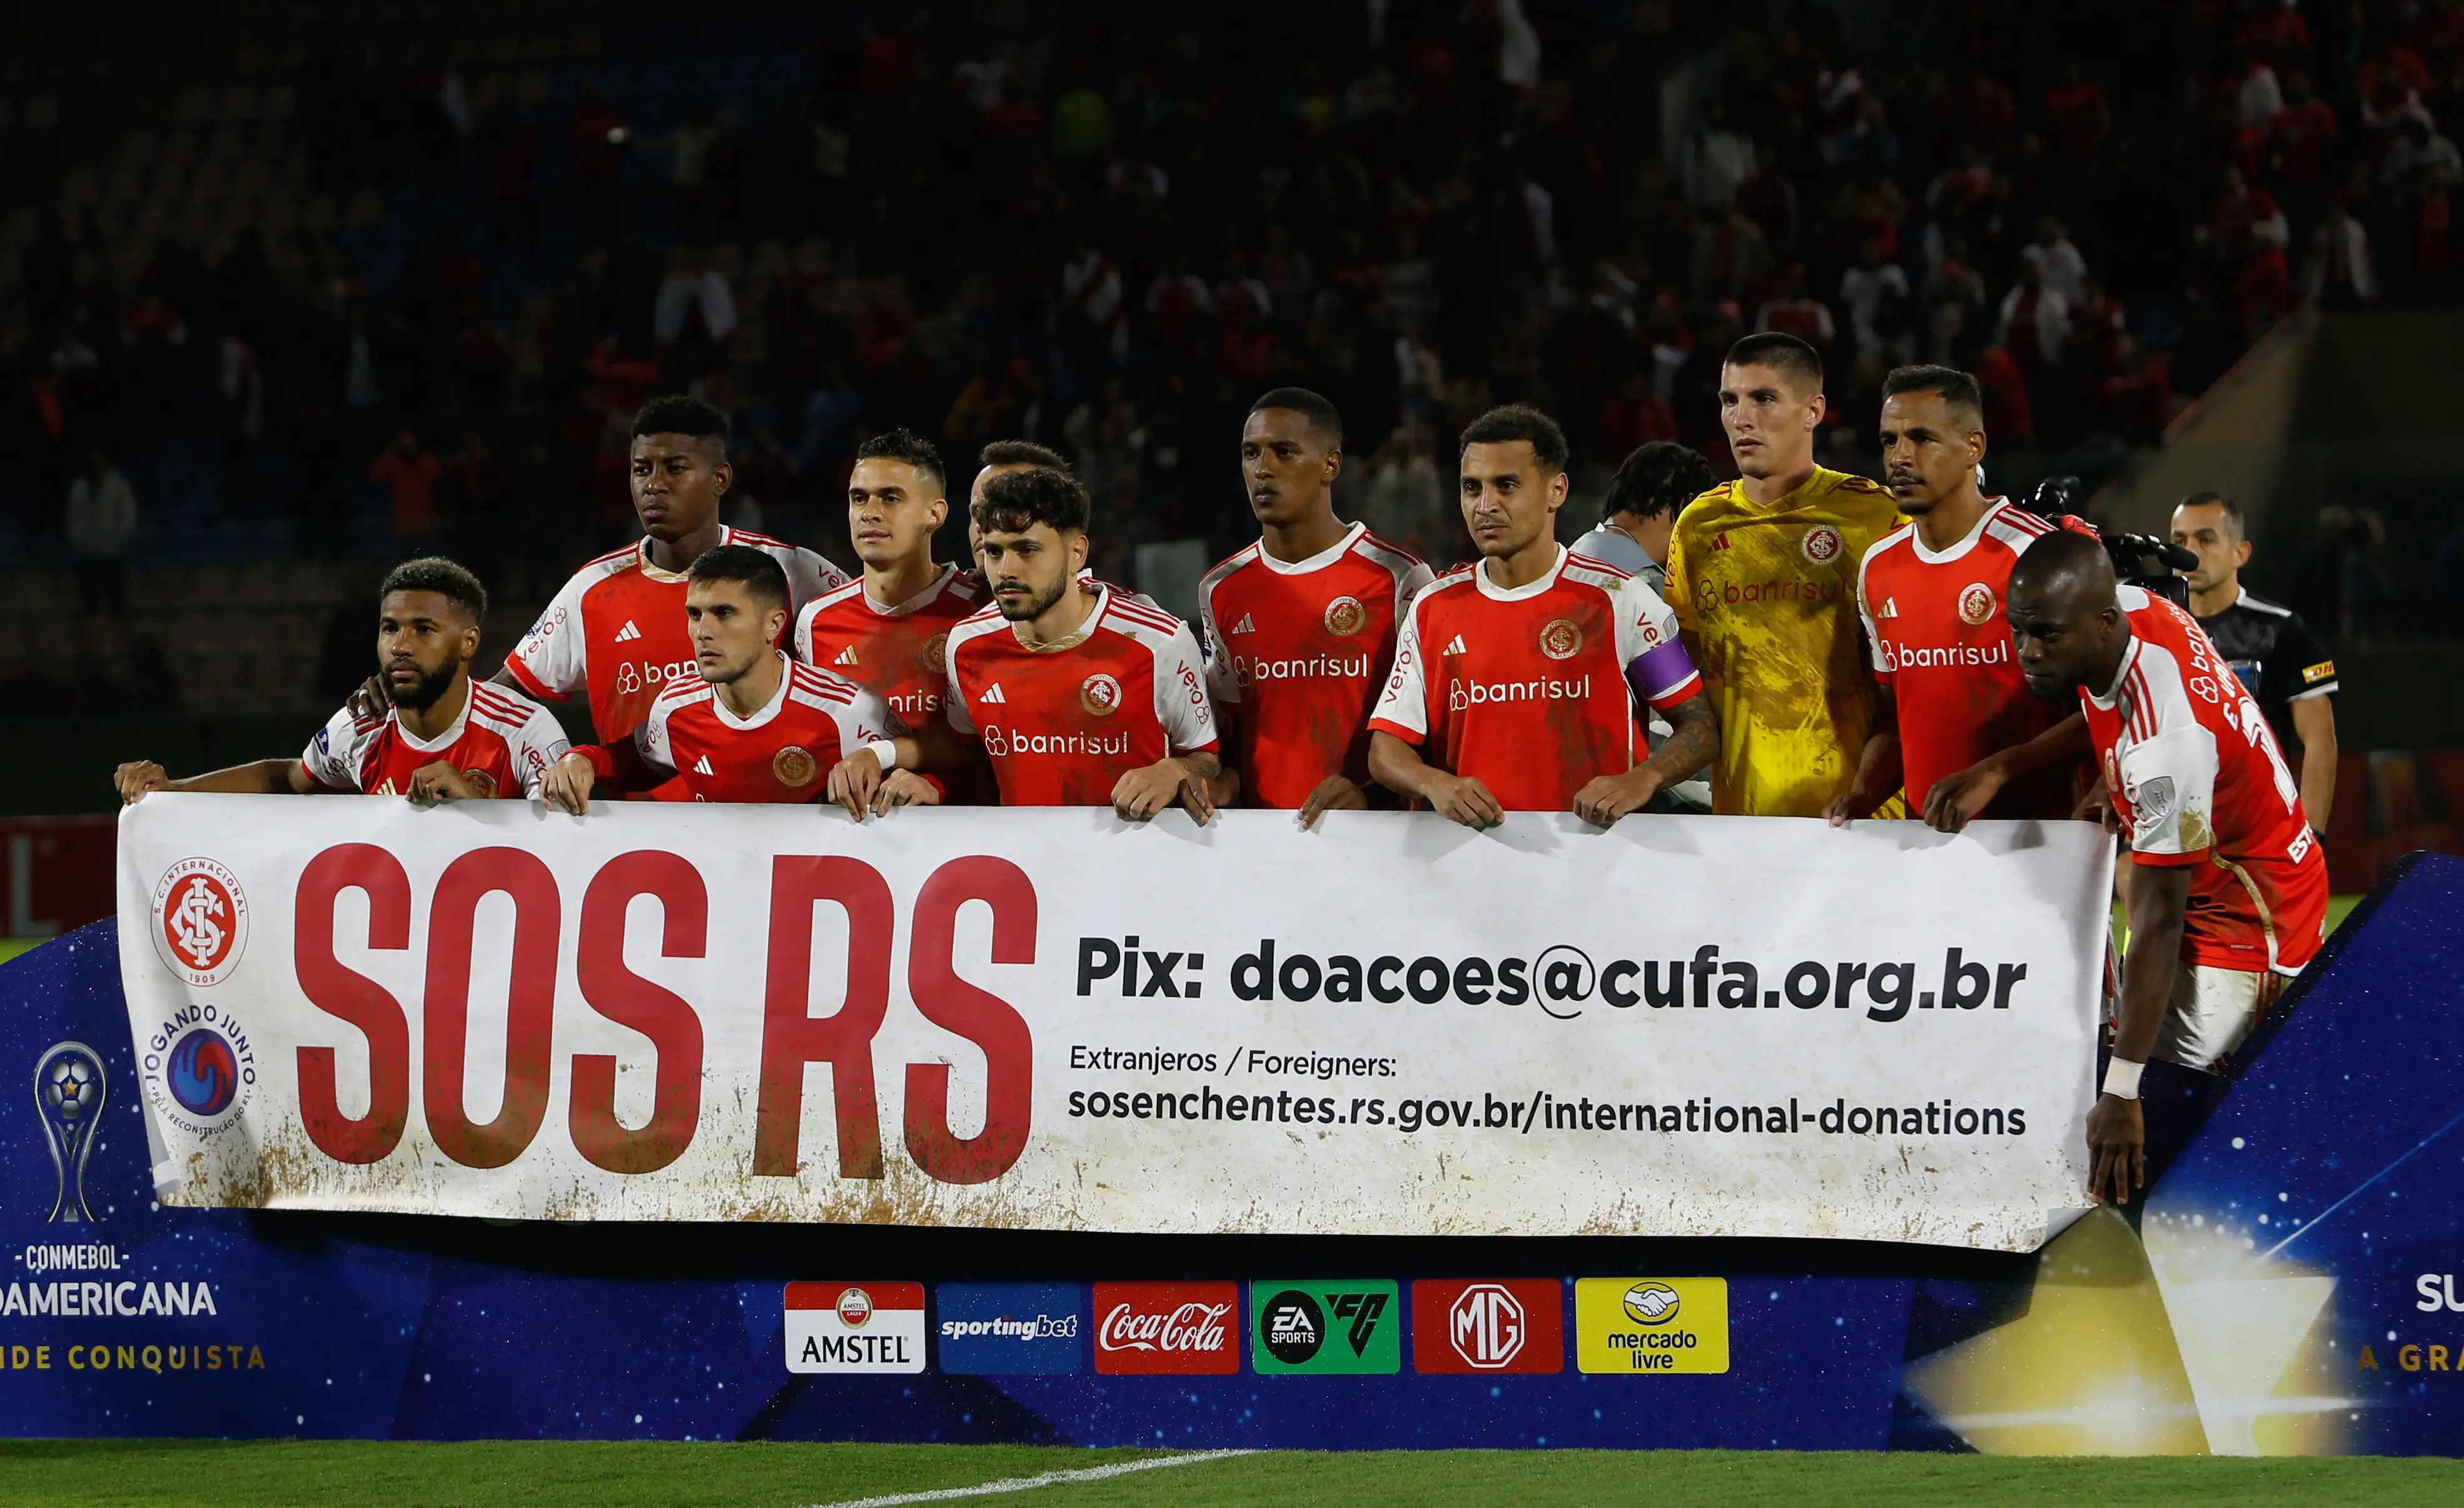 Imagem do time do Internacional no momento da execução do hino nacional no jogo pela Sul-Americana